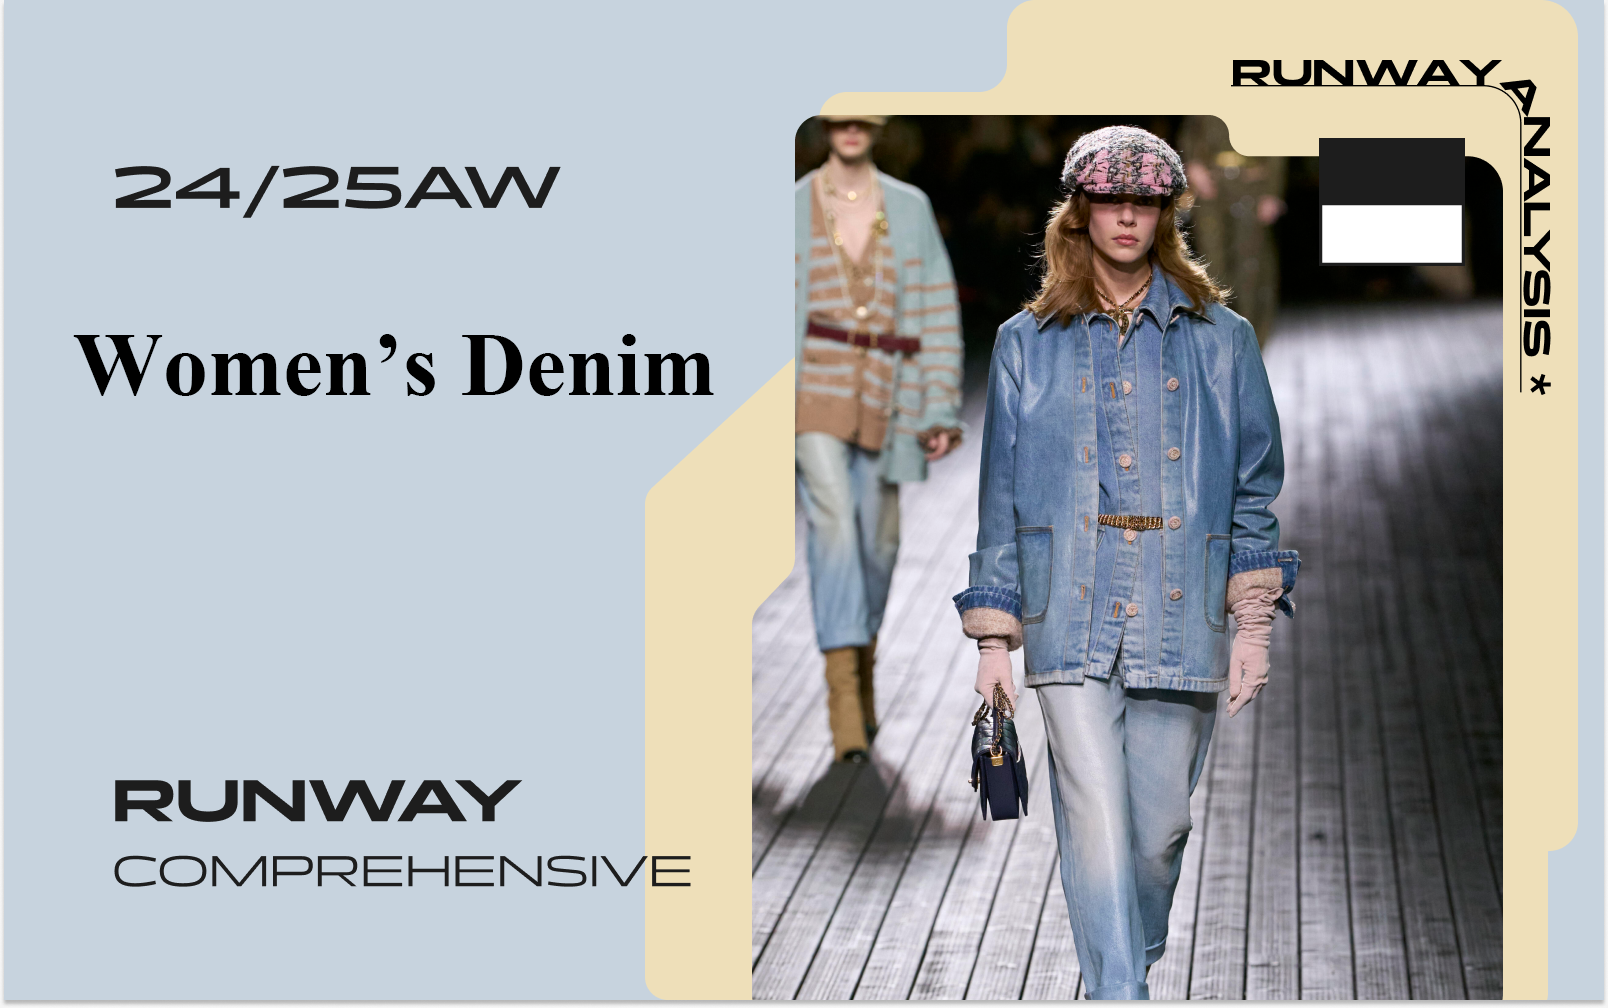 Twin -- The Comprehensive Analysis of Women's Denim Runway | Part 2